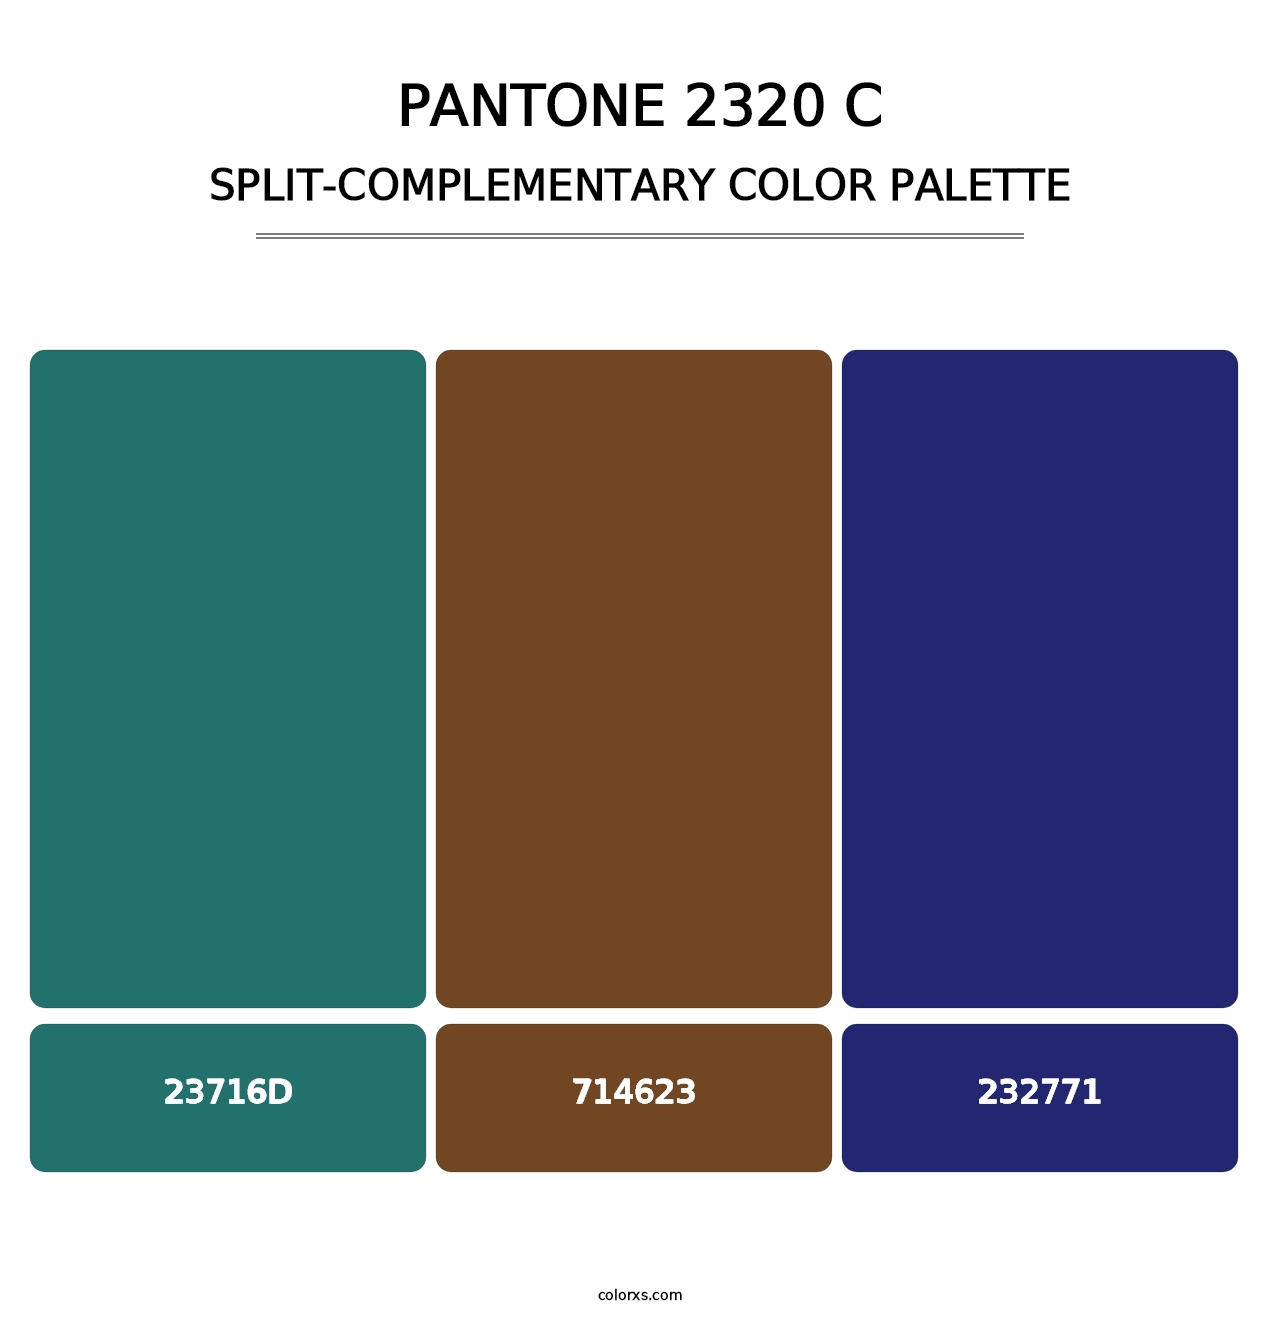 PANTONE 2320 C - Split-Complementary Color Palette